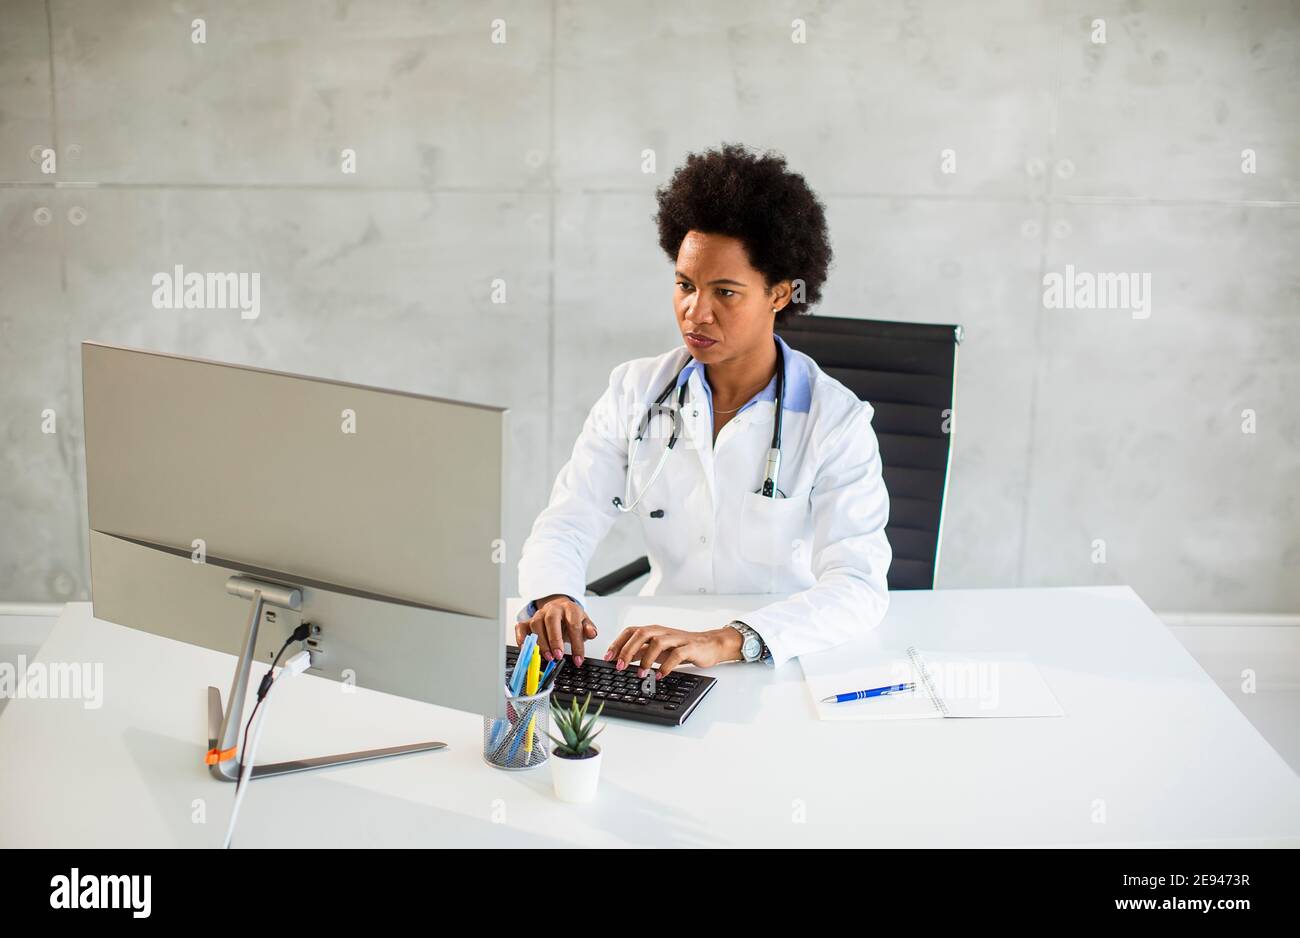 Femme afro-américaine médecin portant un manteau blanc avec stéthoscope assis derrière le bureau Banque D'Images